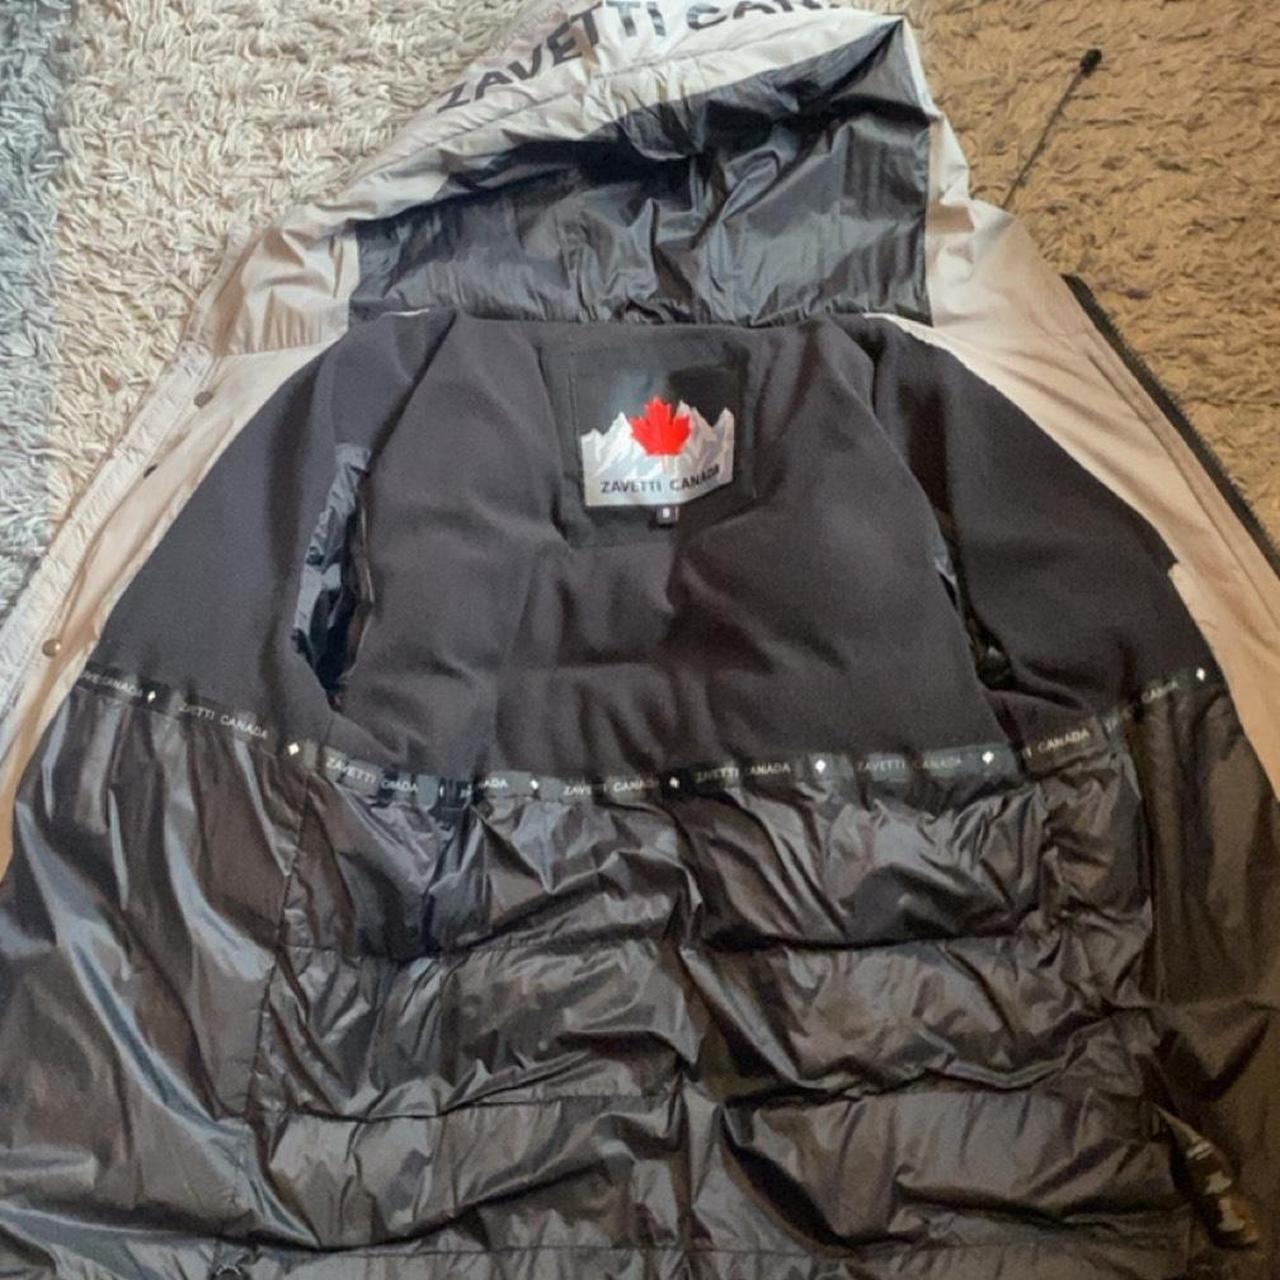 Zavetti Canada grey puffer jacket good quality - Depop